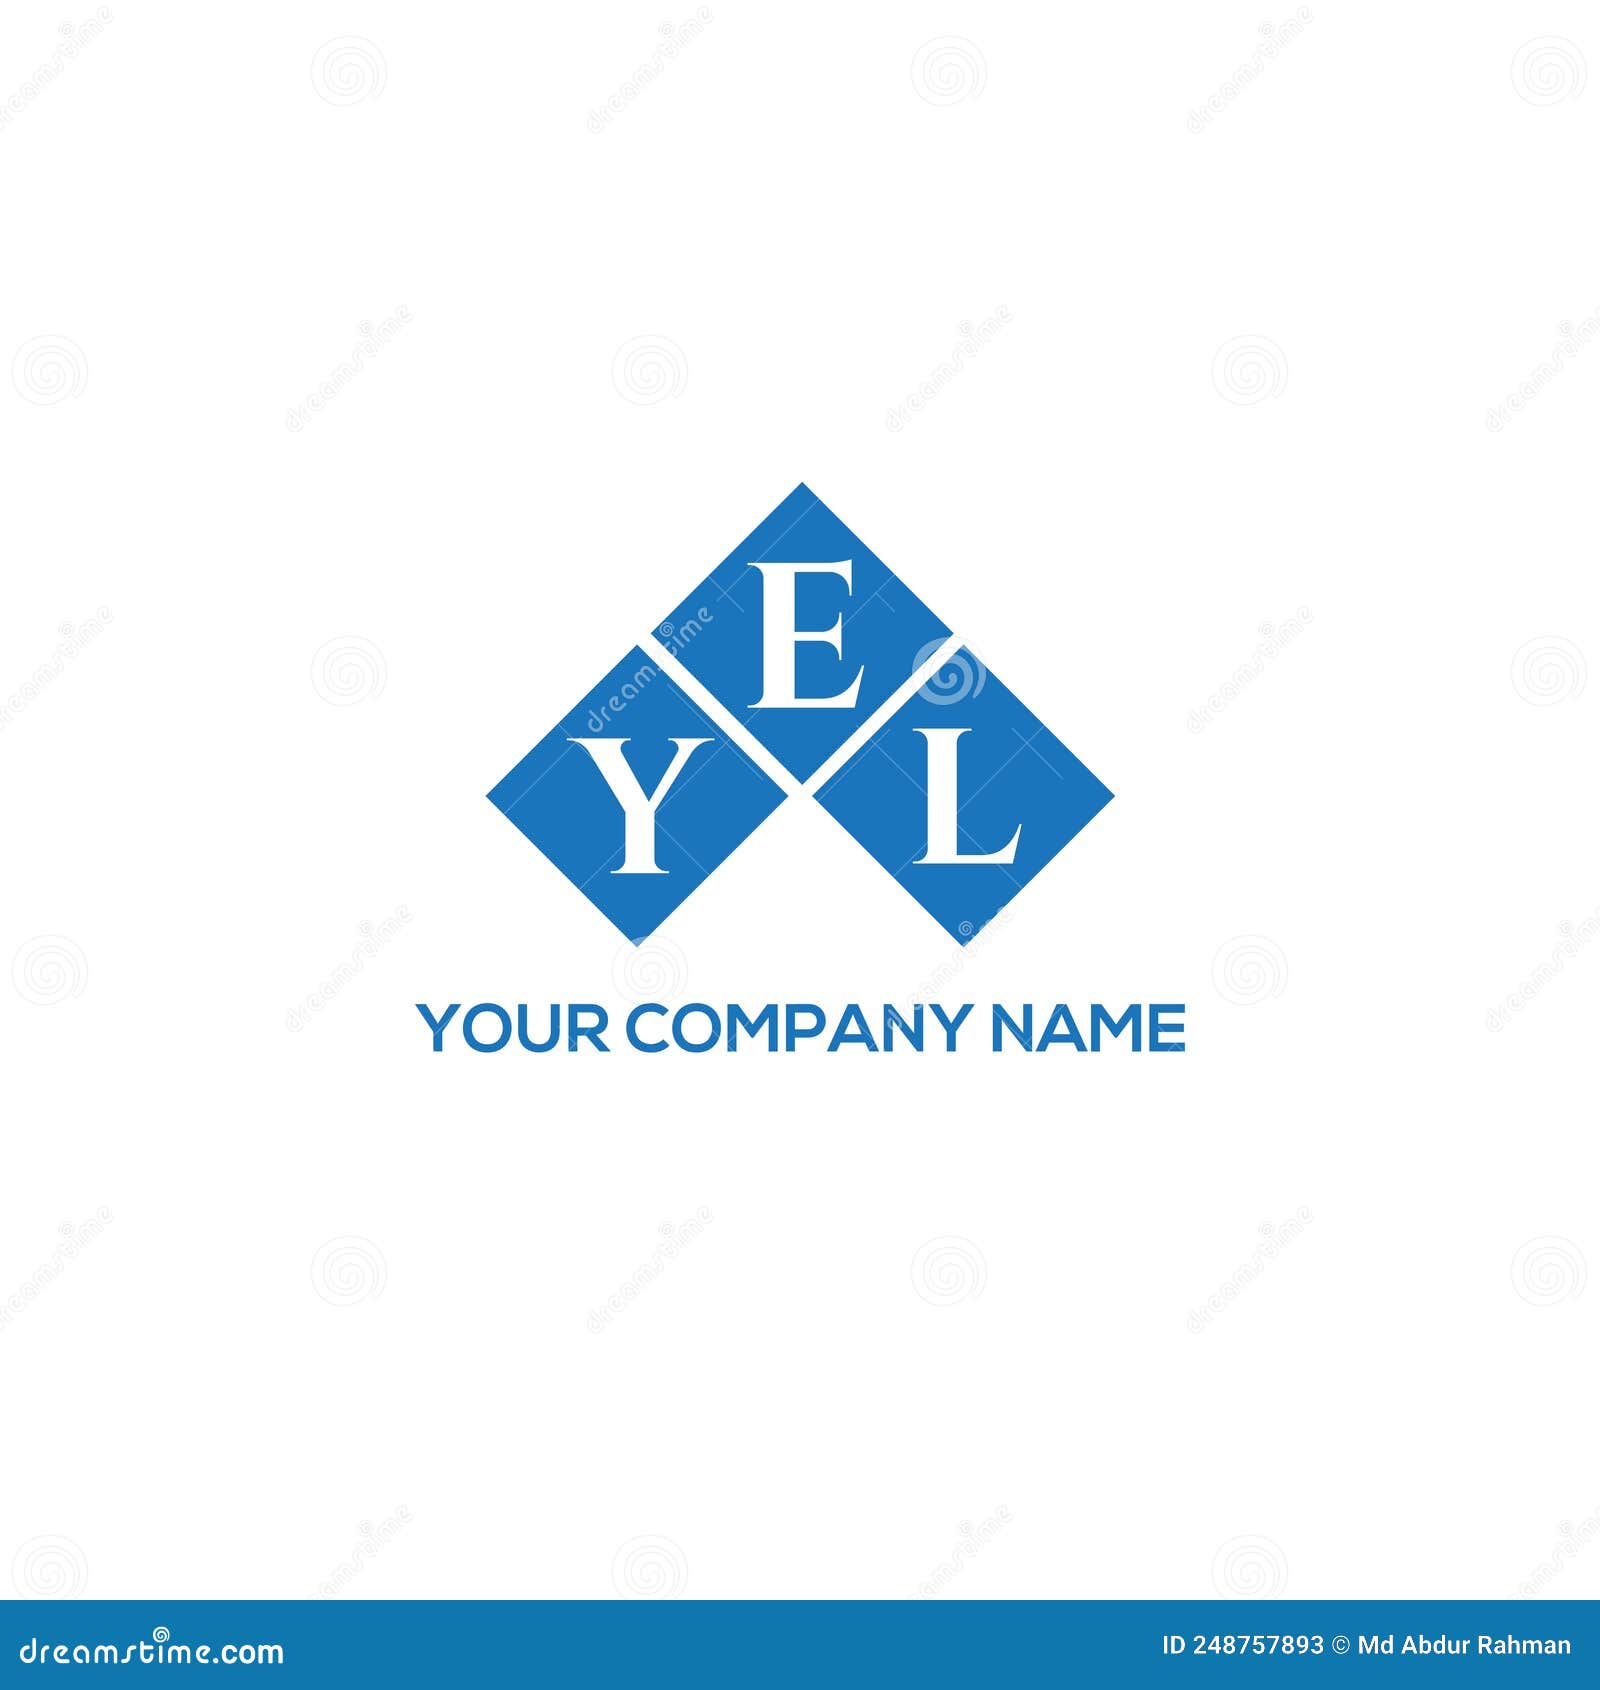 yel letter logo  on black background. yel creative initials letter logo concept. yel letter .yel letter logo  on